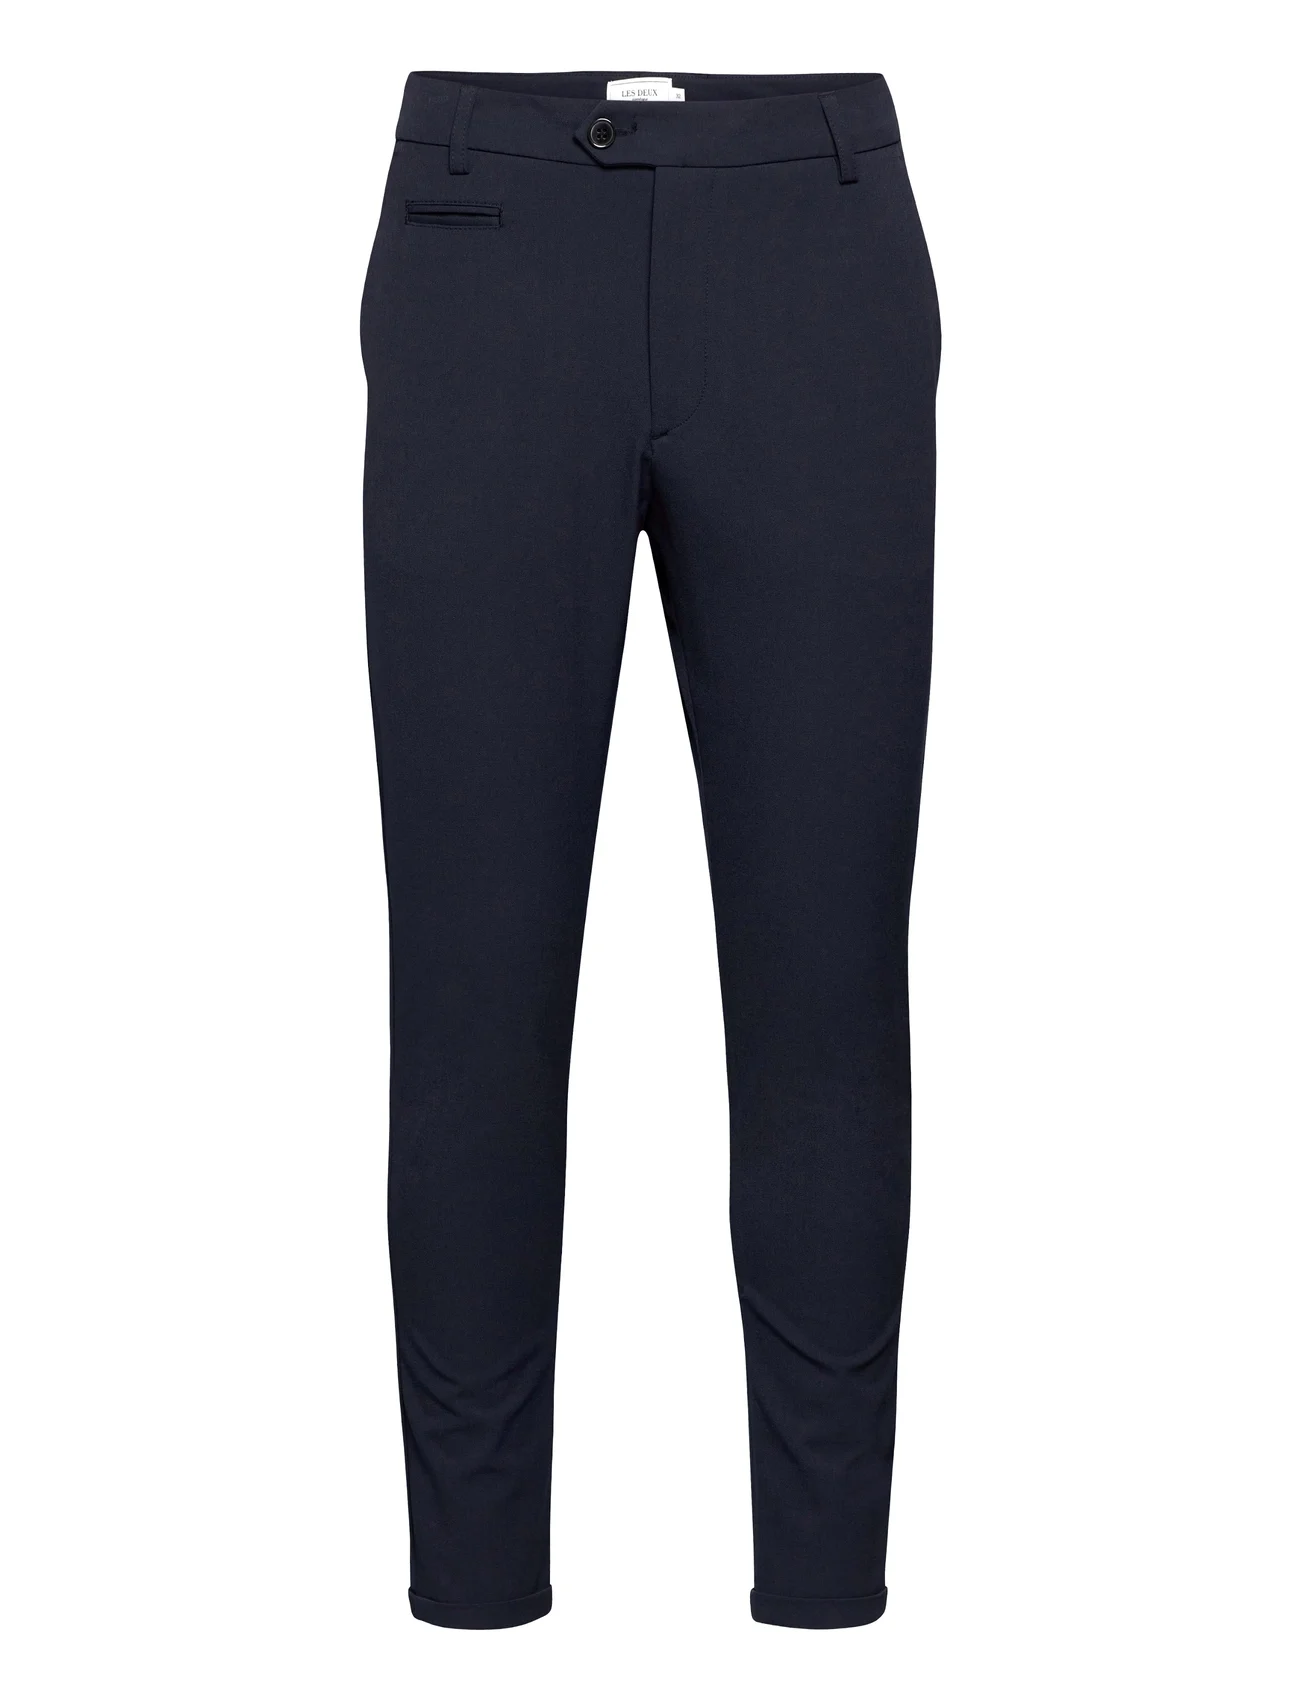 Les Deux - Como LIGHT Suit Pants - suit trousers - navy - 0